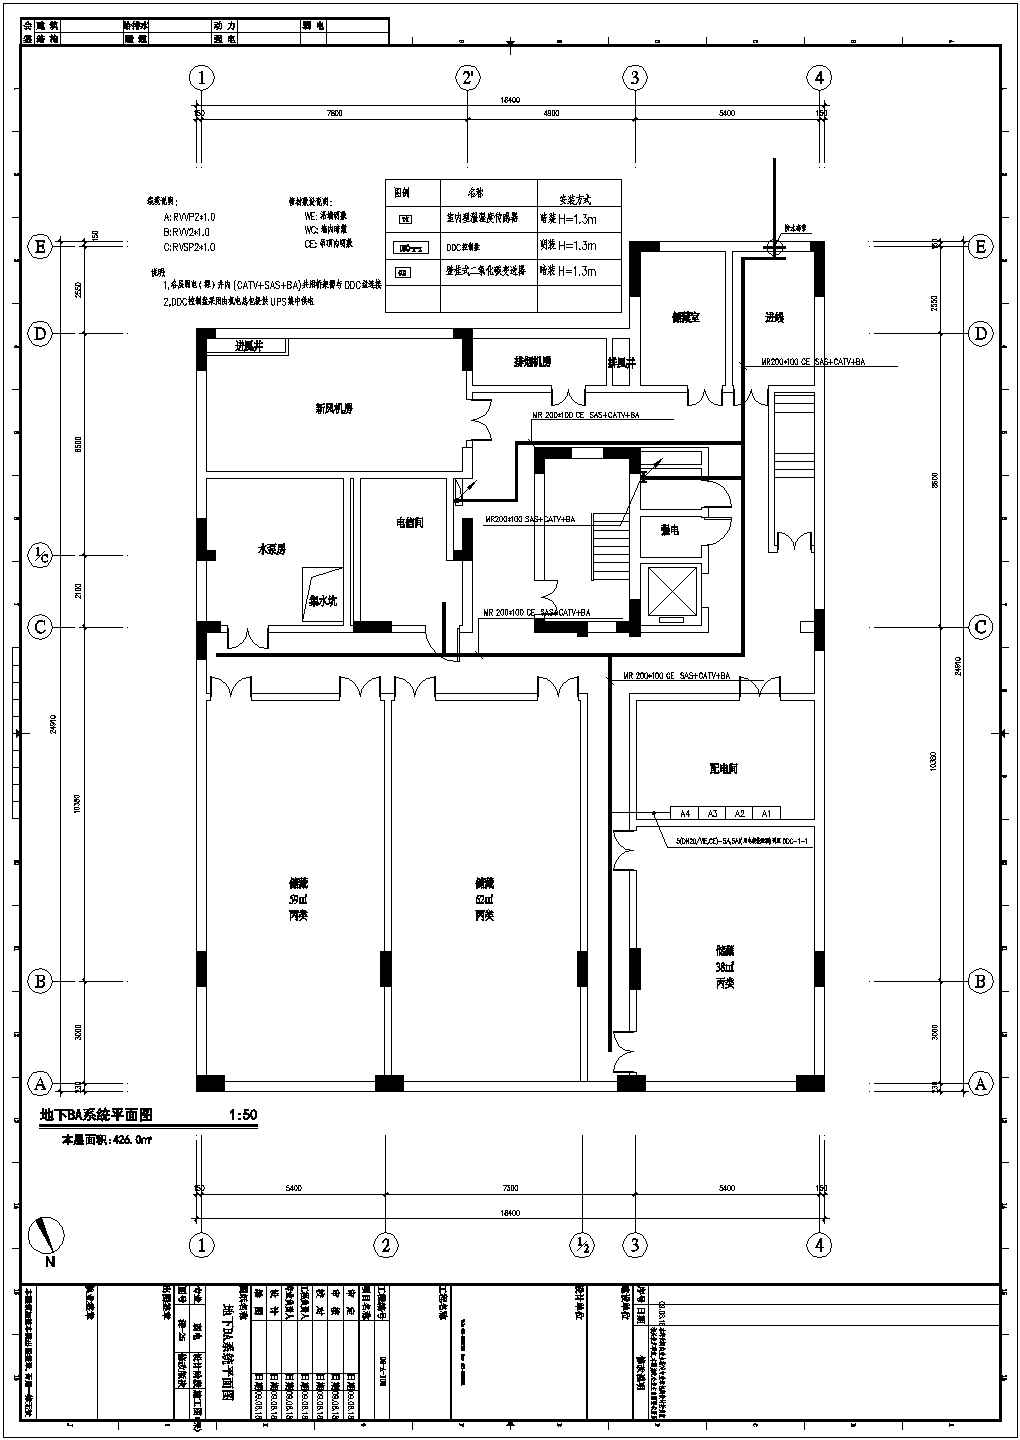 大型展览馆全套弱电施工设计cad施工图